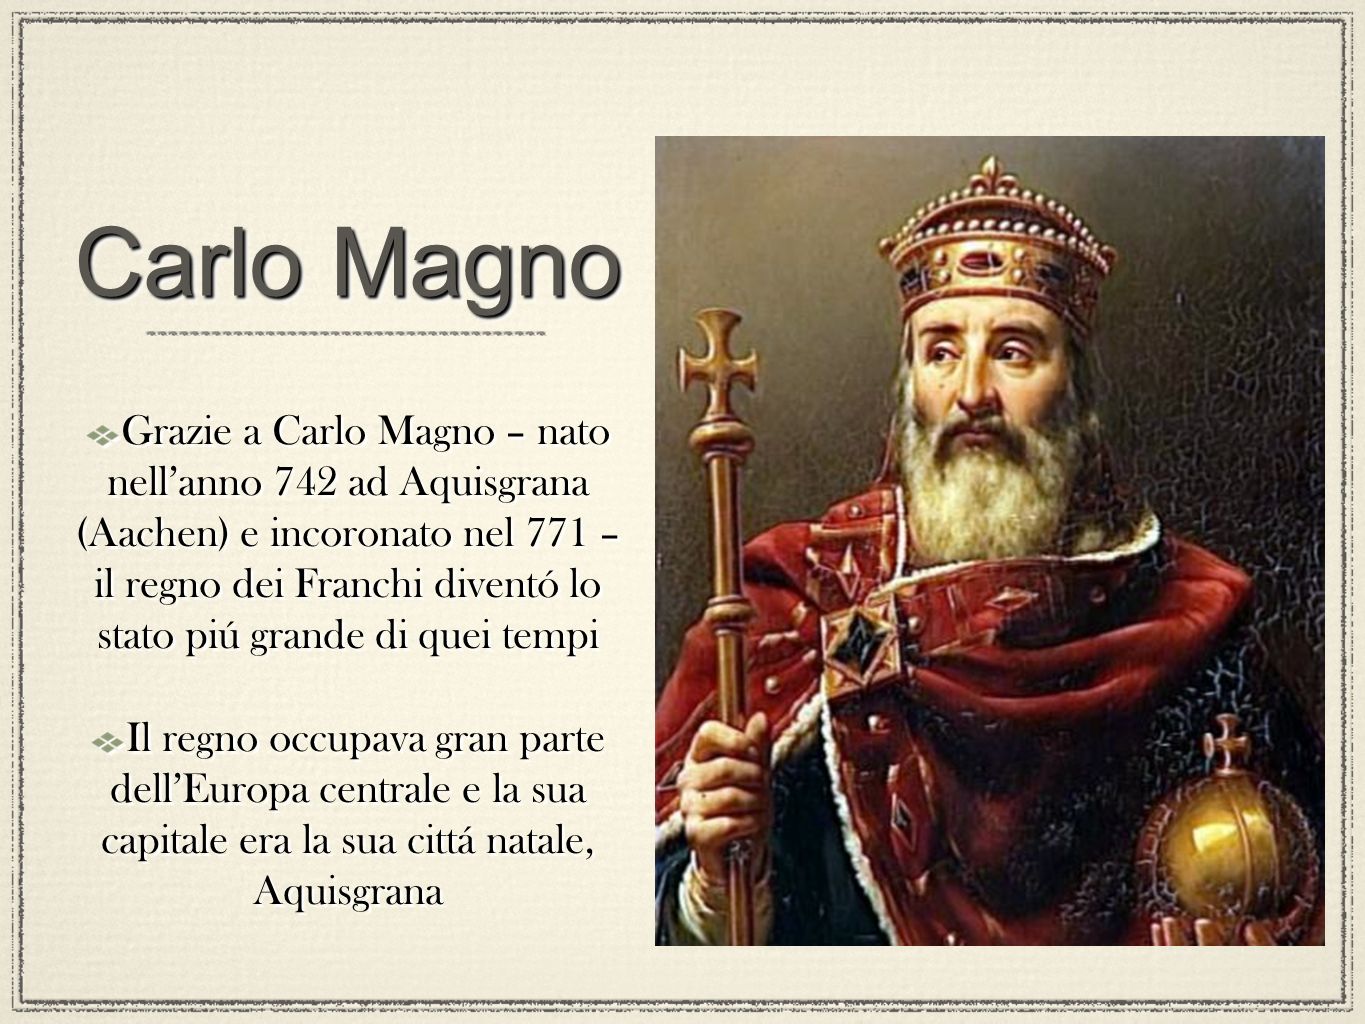 Carlo Magno E Il Sacro Romano Impero - Lessons - Tes Teach